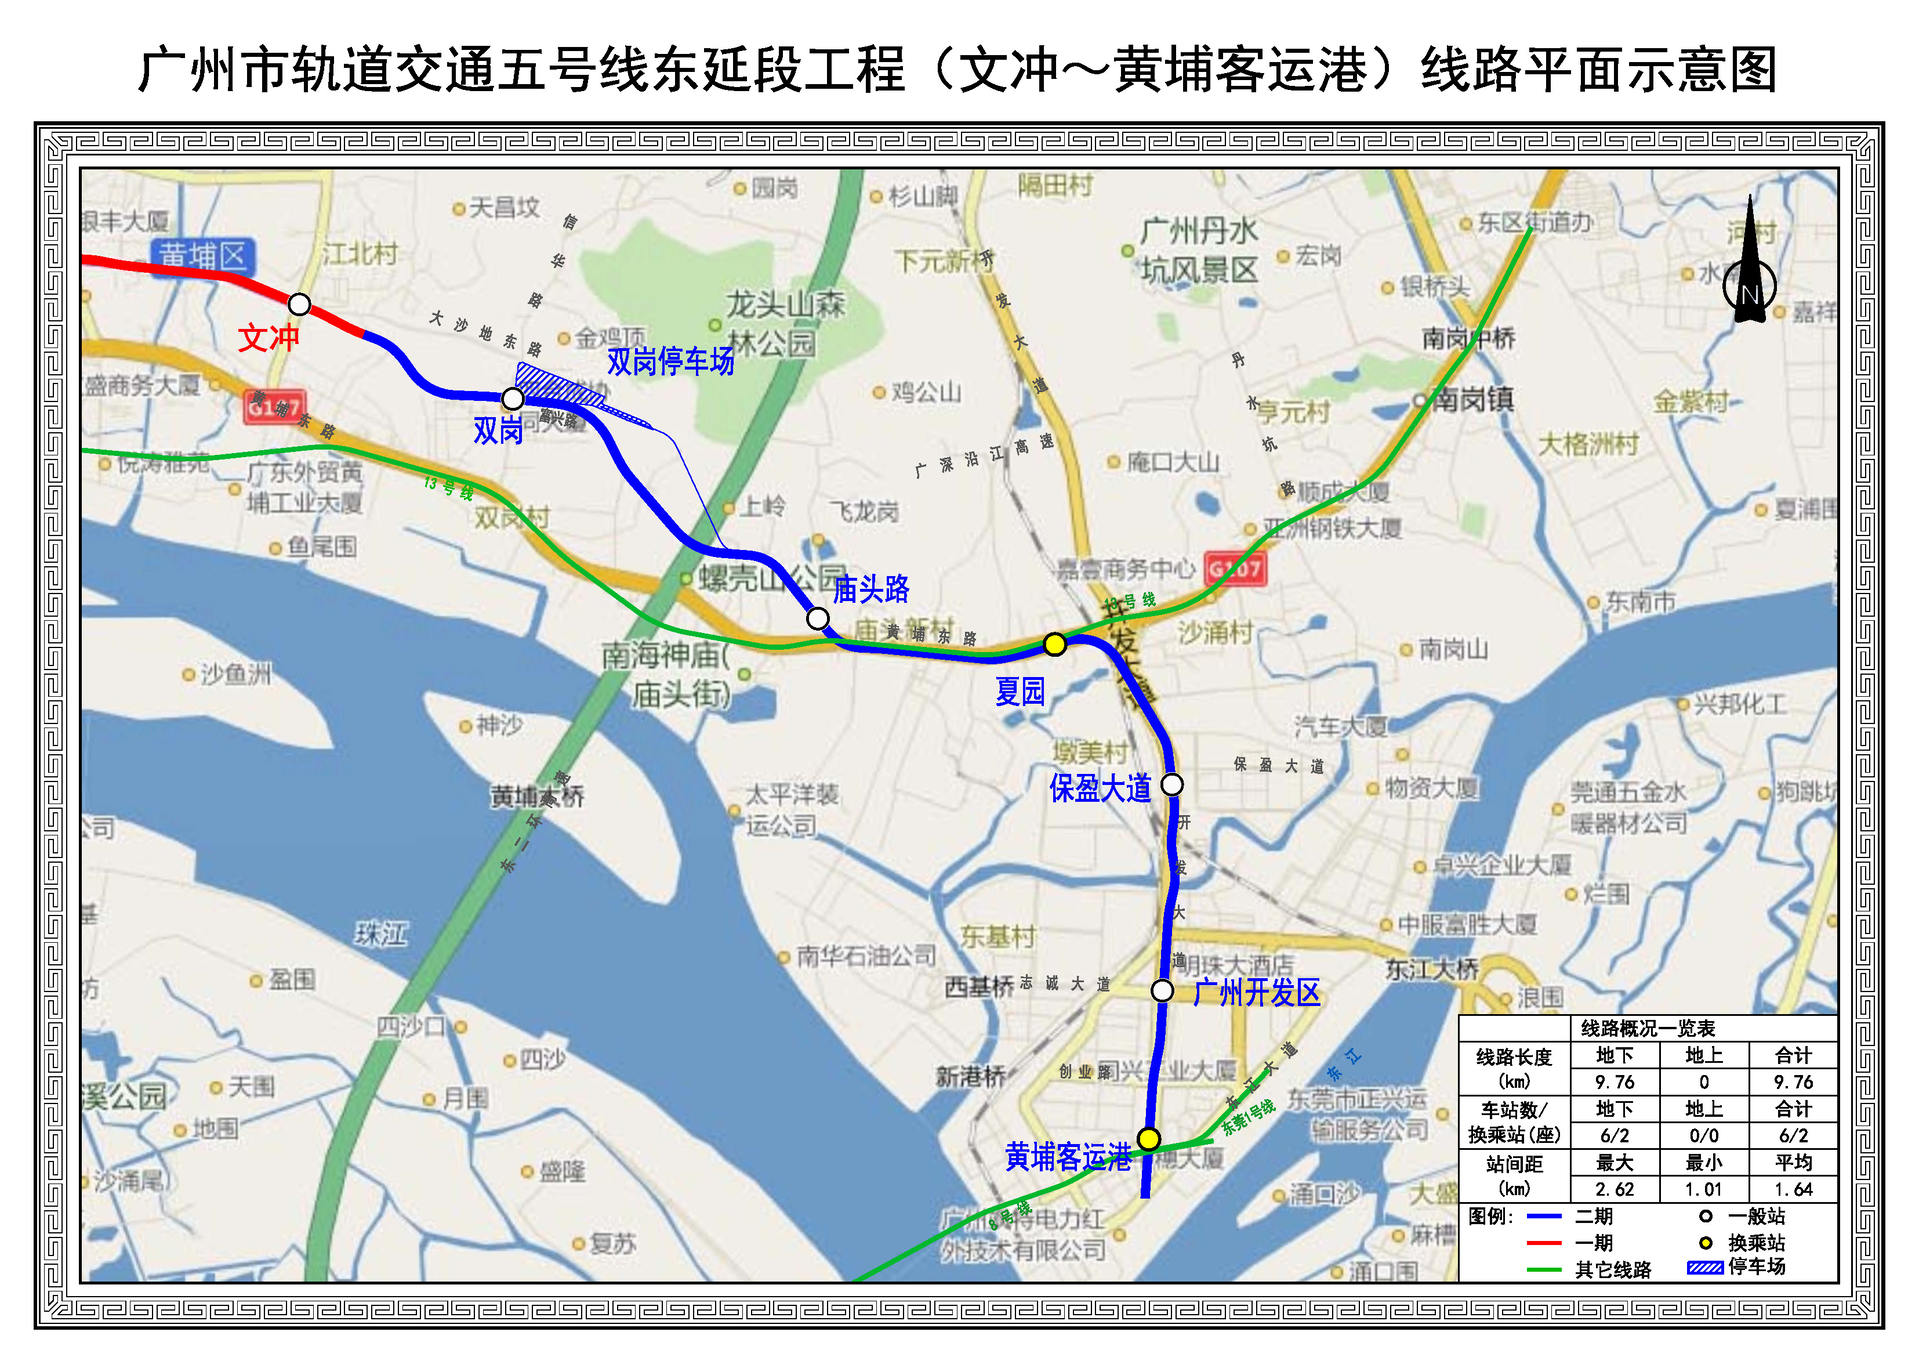 广州东莞的地铁可以开工了!以后坐地铁也能去吃烧鹅濑!